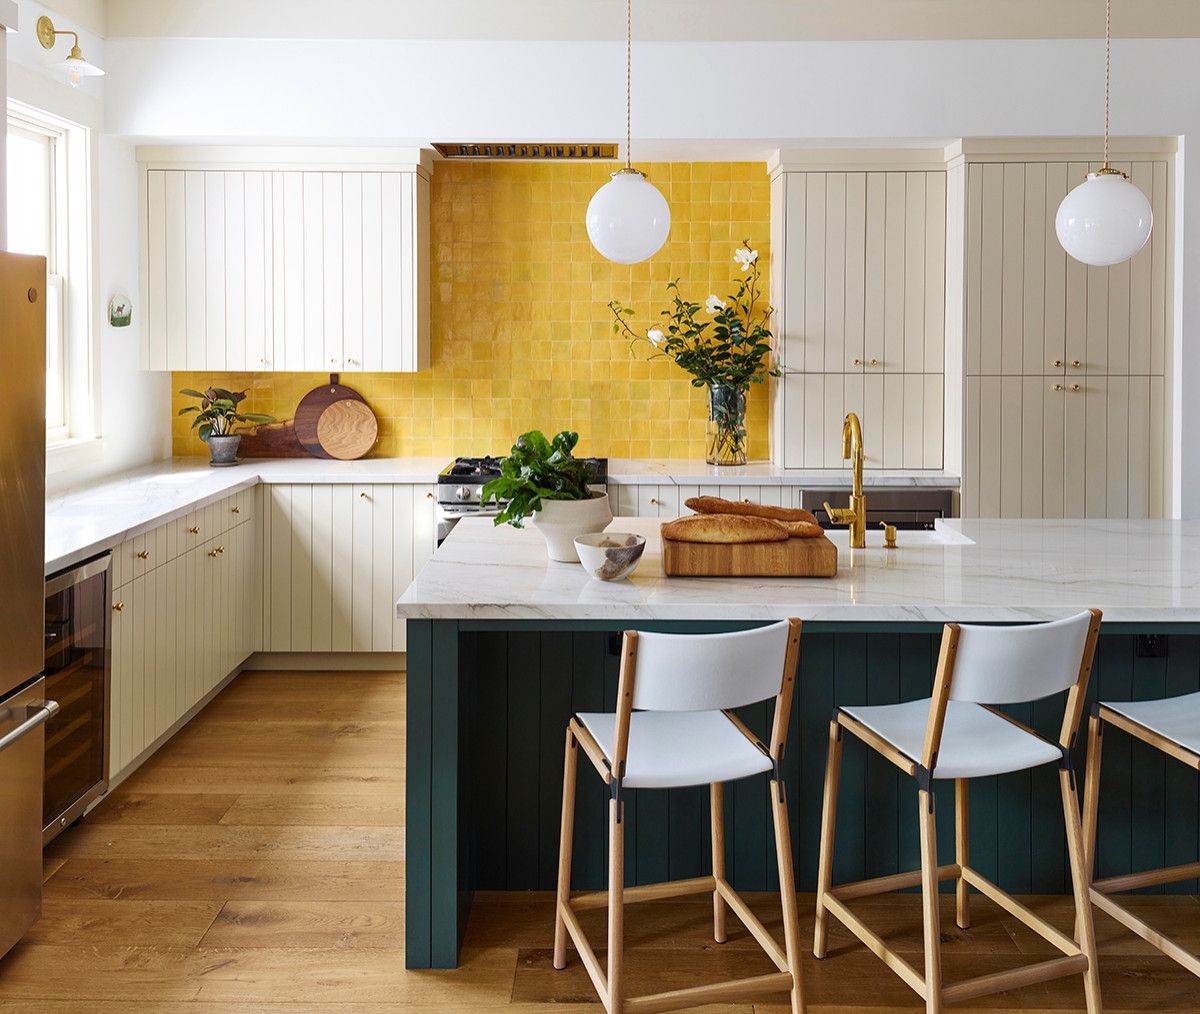 Vẻ đẹp sang trọng của gian bếp đến từ bàn đảo màu xanh lá đậm và mảng tường ốp gạch màu vàng chanh kết hợp sắc trắng chủ đạo. 